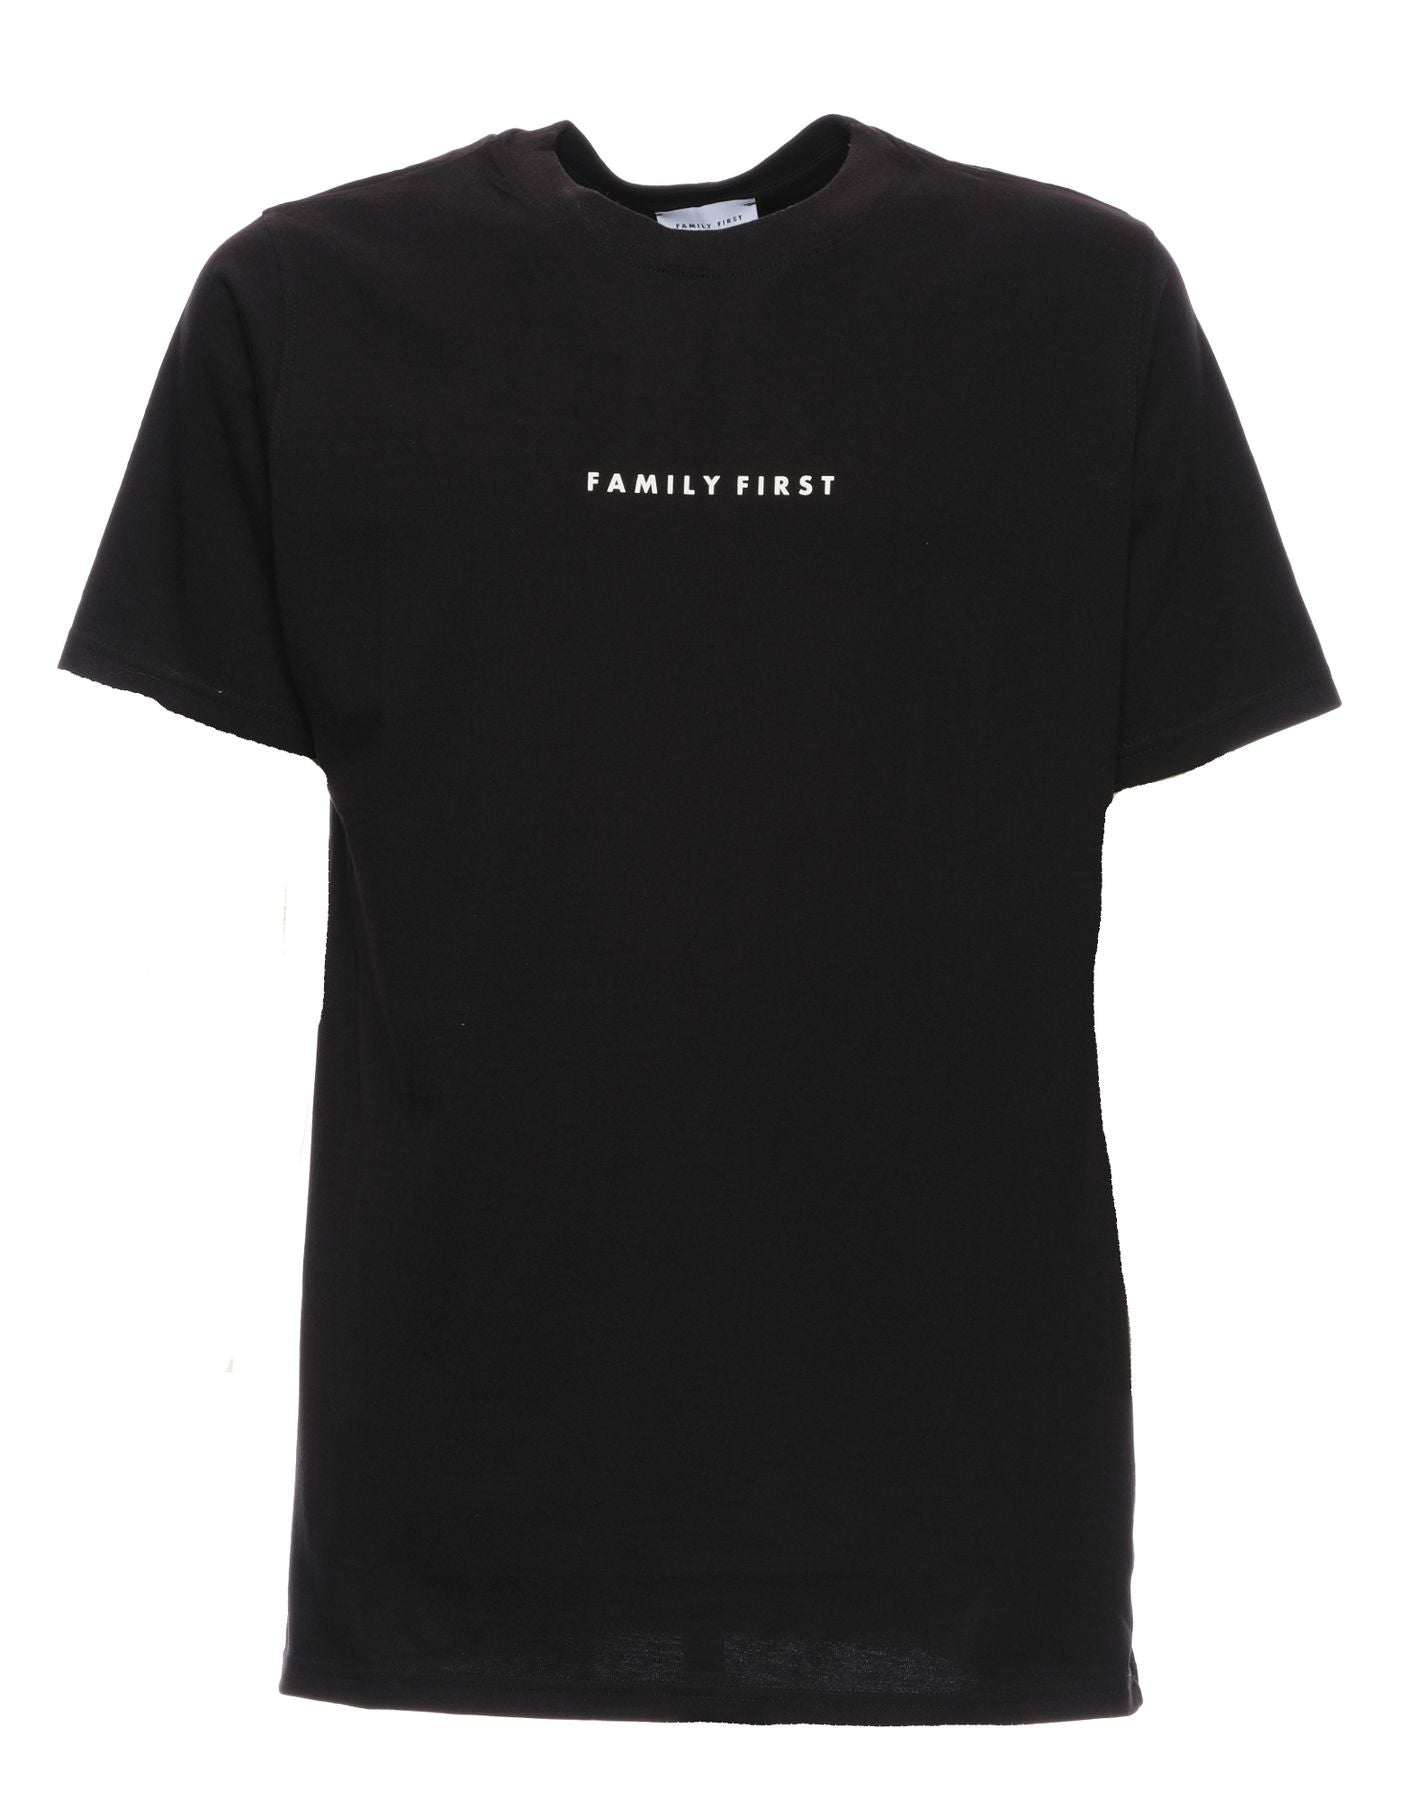 T-Shirt für Man Box Logo Schwarz Family First